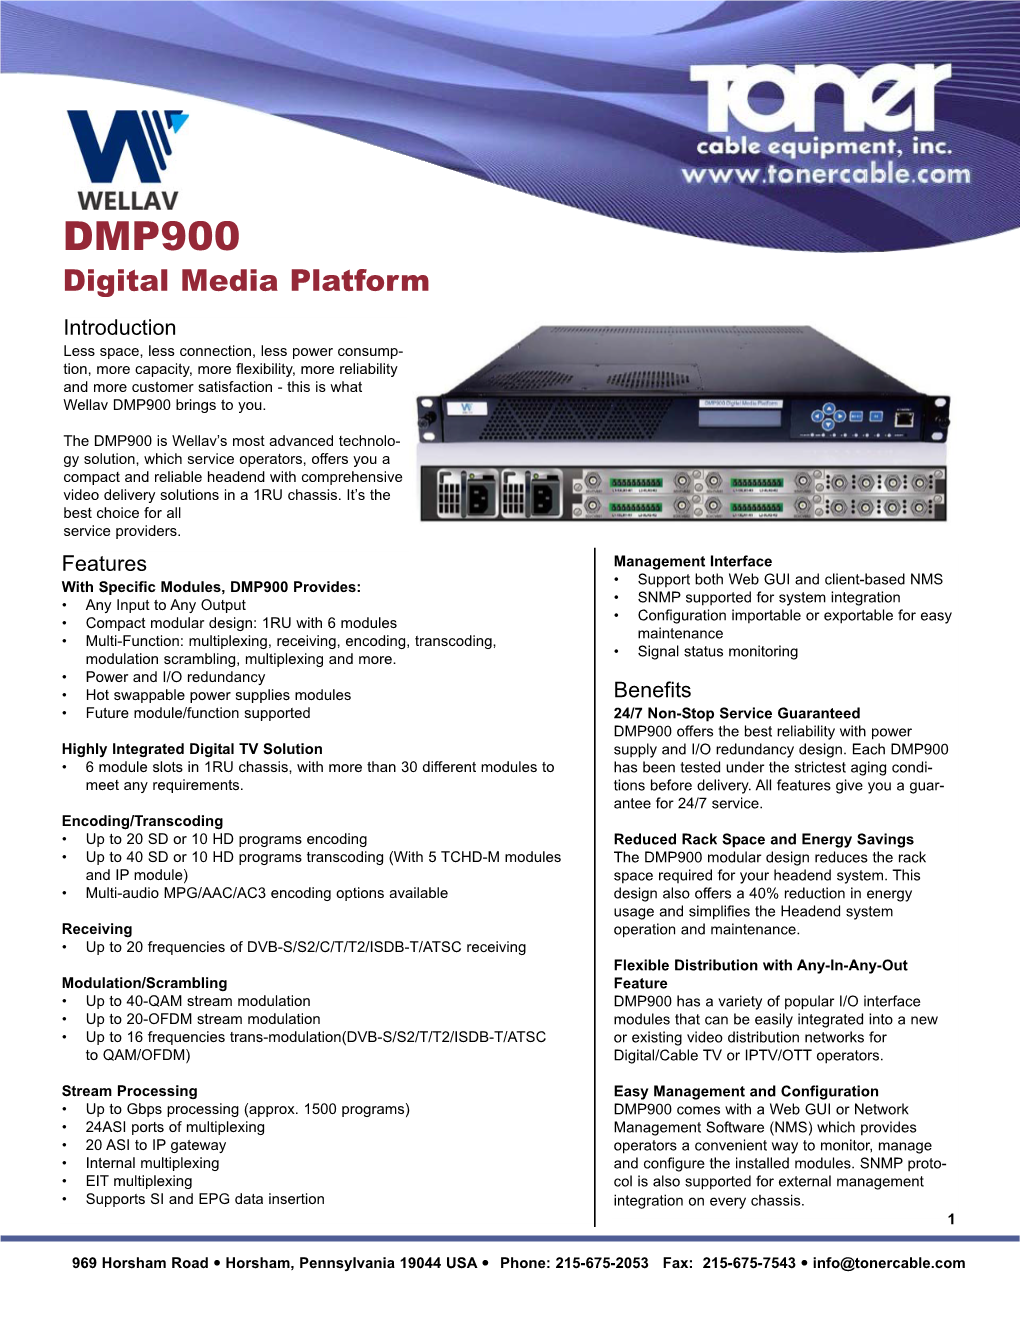 Wellav DMP900 Digital Media Platform TCE CABLE TOOLS.Qxd